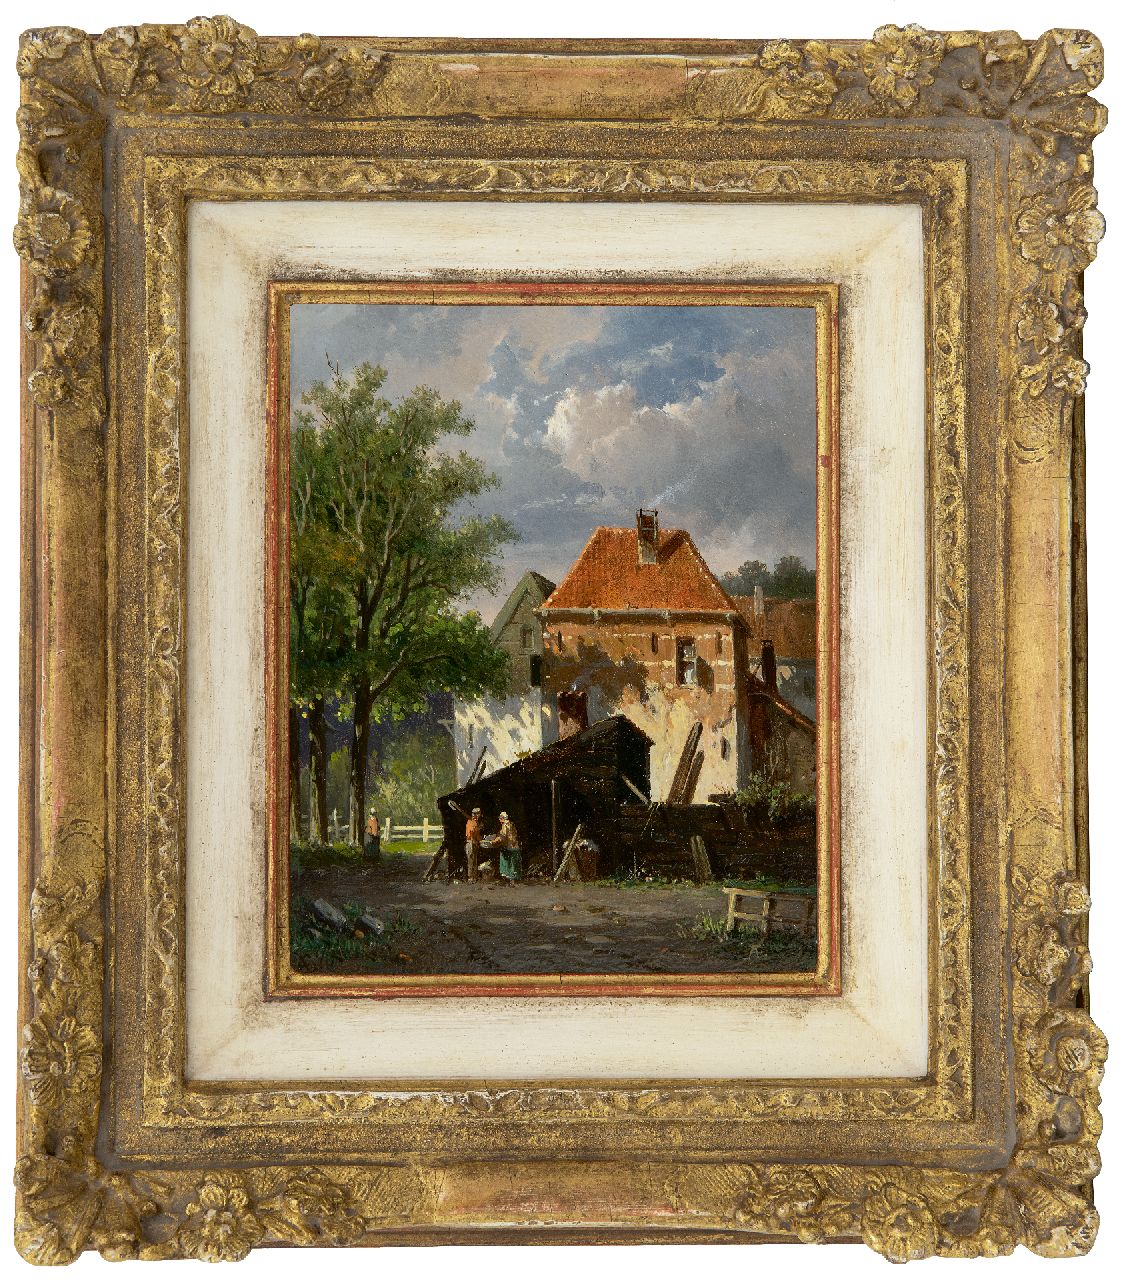 Eversen A.  | Adrianus Eversen | Schilderijen te koop aangeboden | Zonnig stadsgezicht (mogelijk Harderwijk), olieverf op paneel 19,2 x 15,2 cm, gesigneerd rechtsonder met monogram